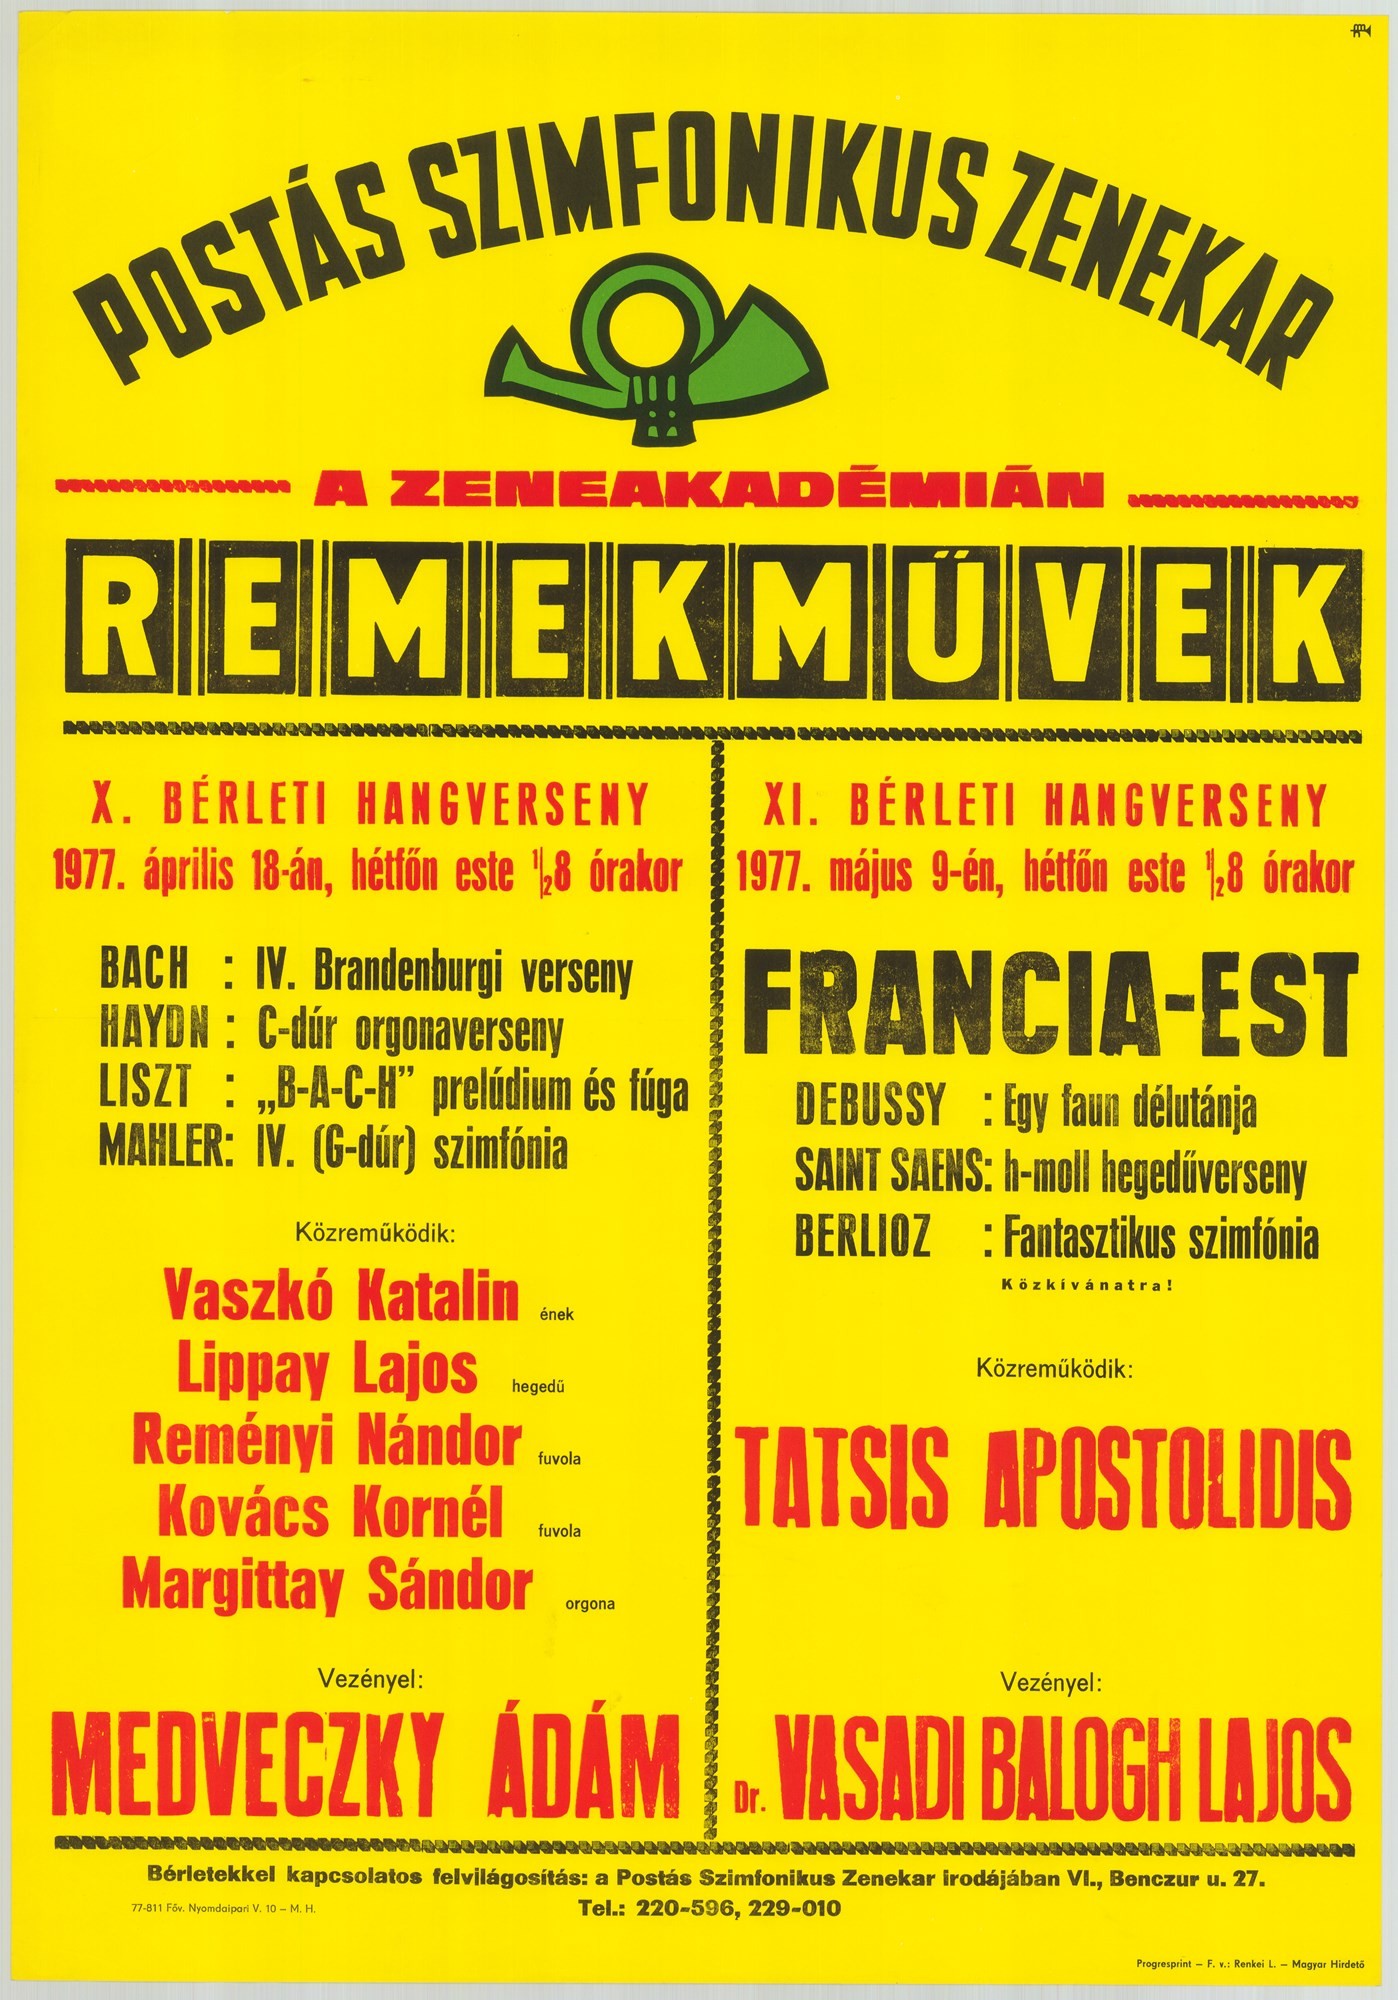 Plakát - Postás Szimfonikus Zenekar a Zeneakadémián, 1977 (Postamúzeum CC BY-NC-SA)